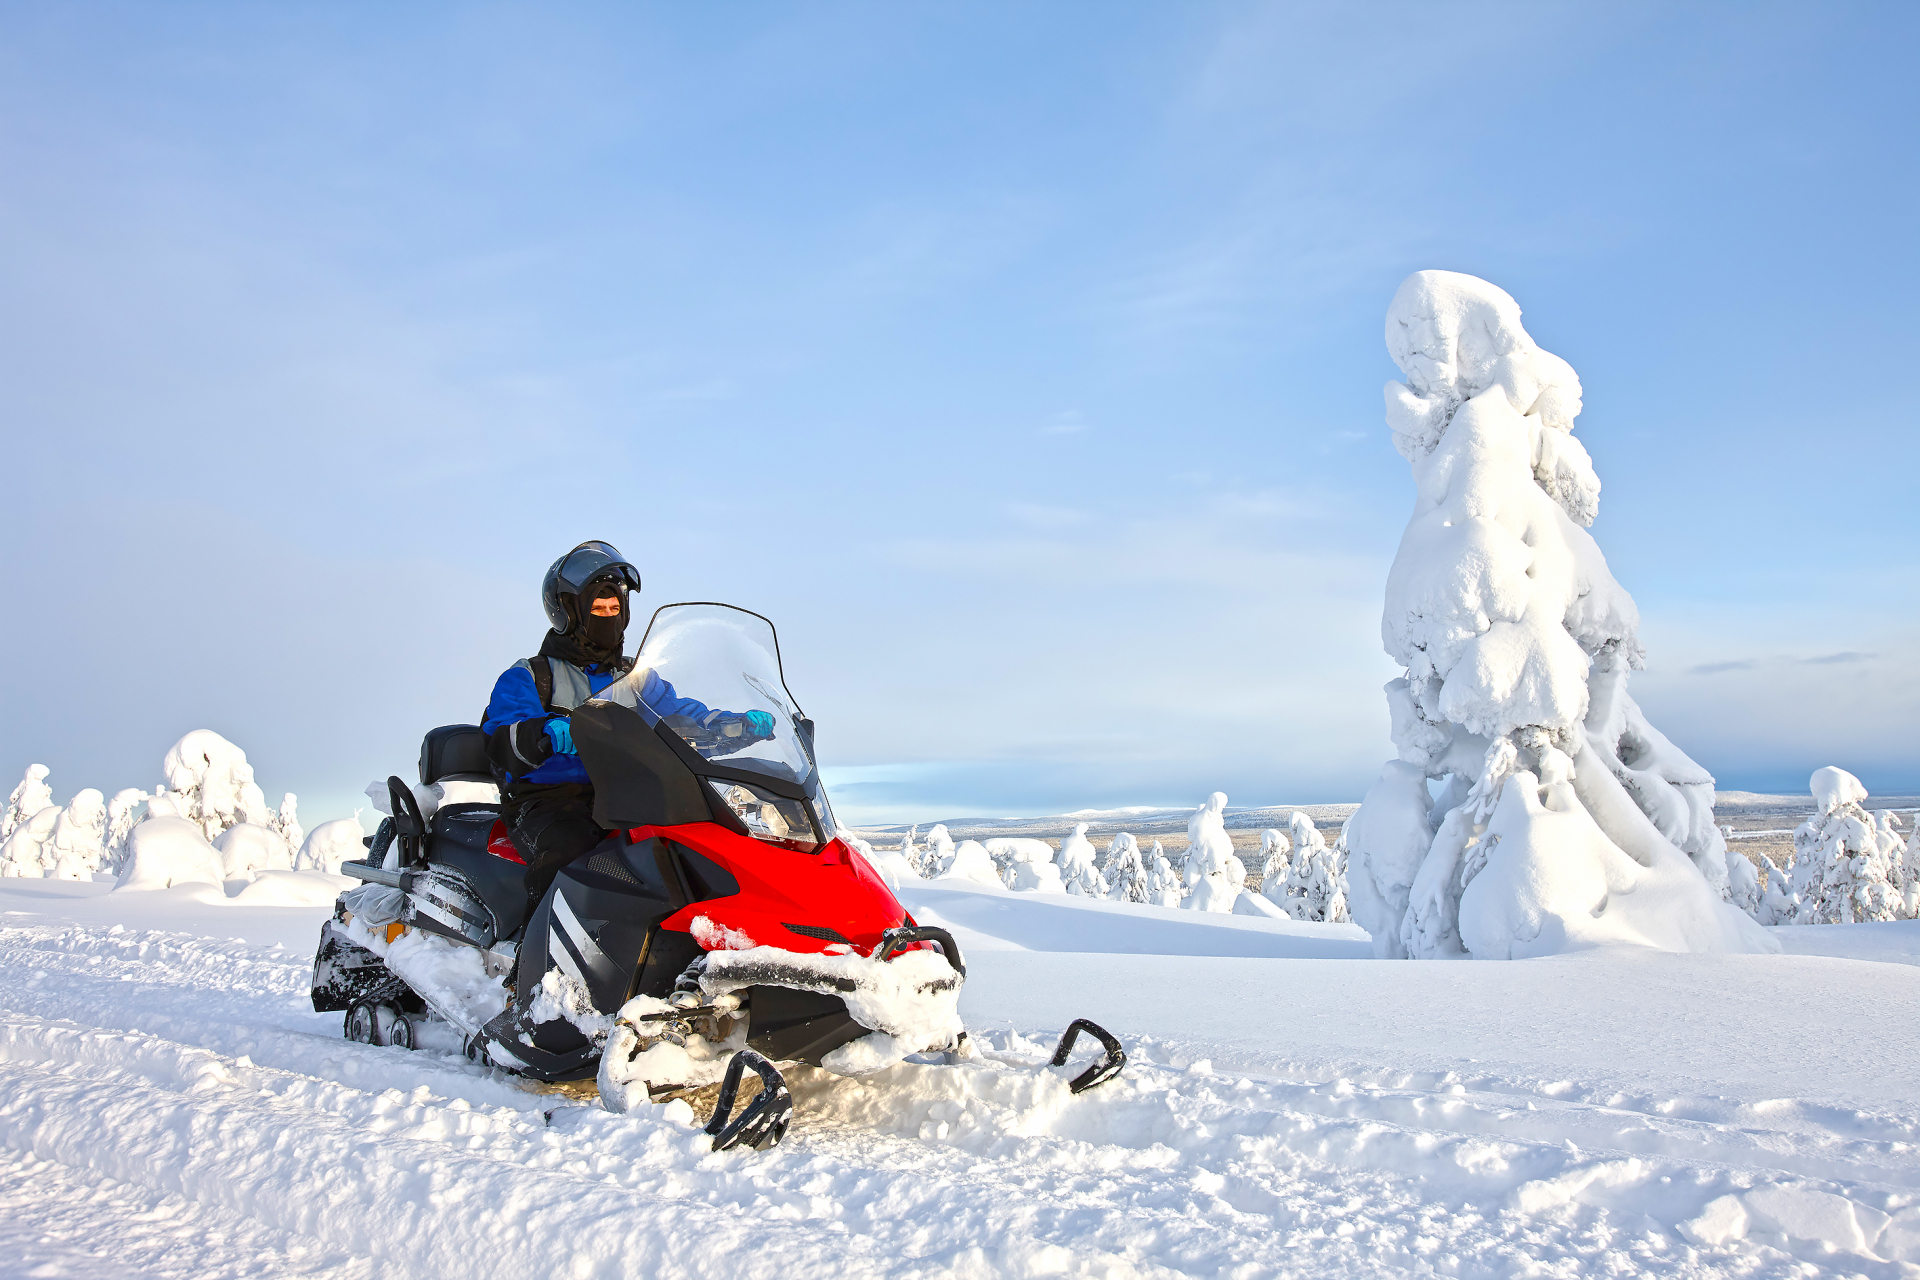 Finnland - Winterwunderland im hohen Norden